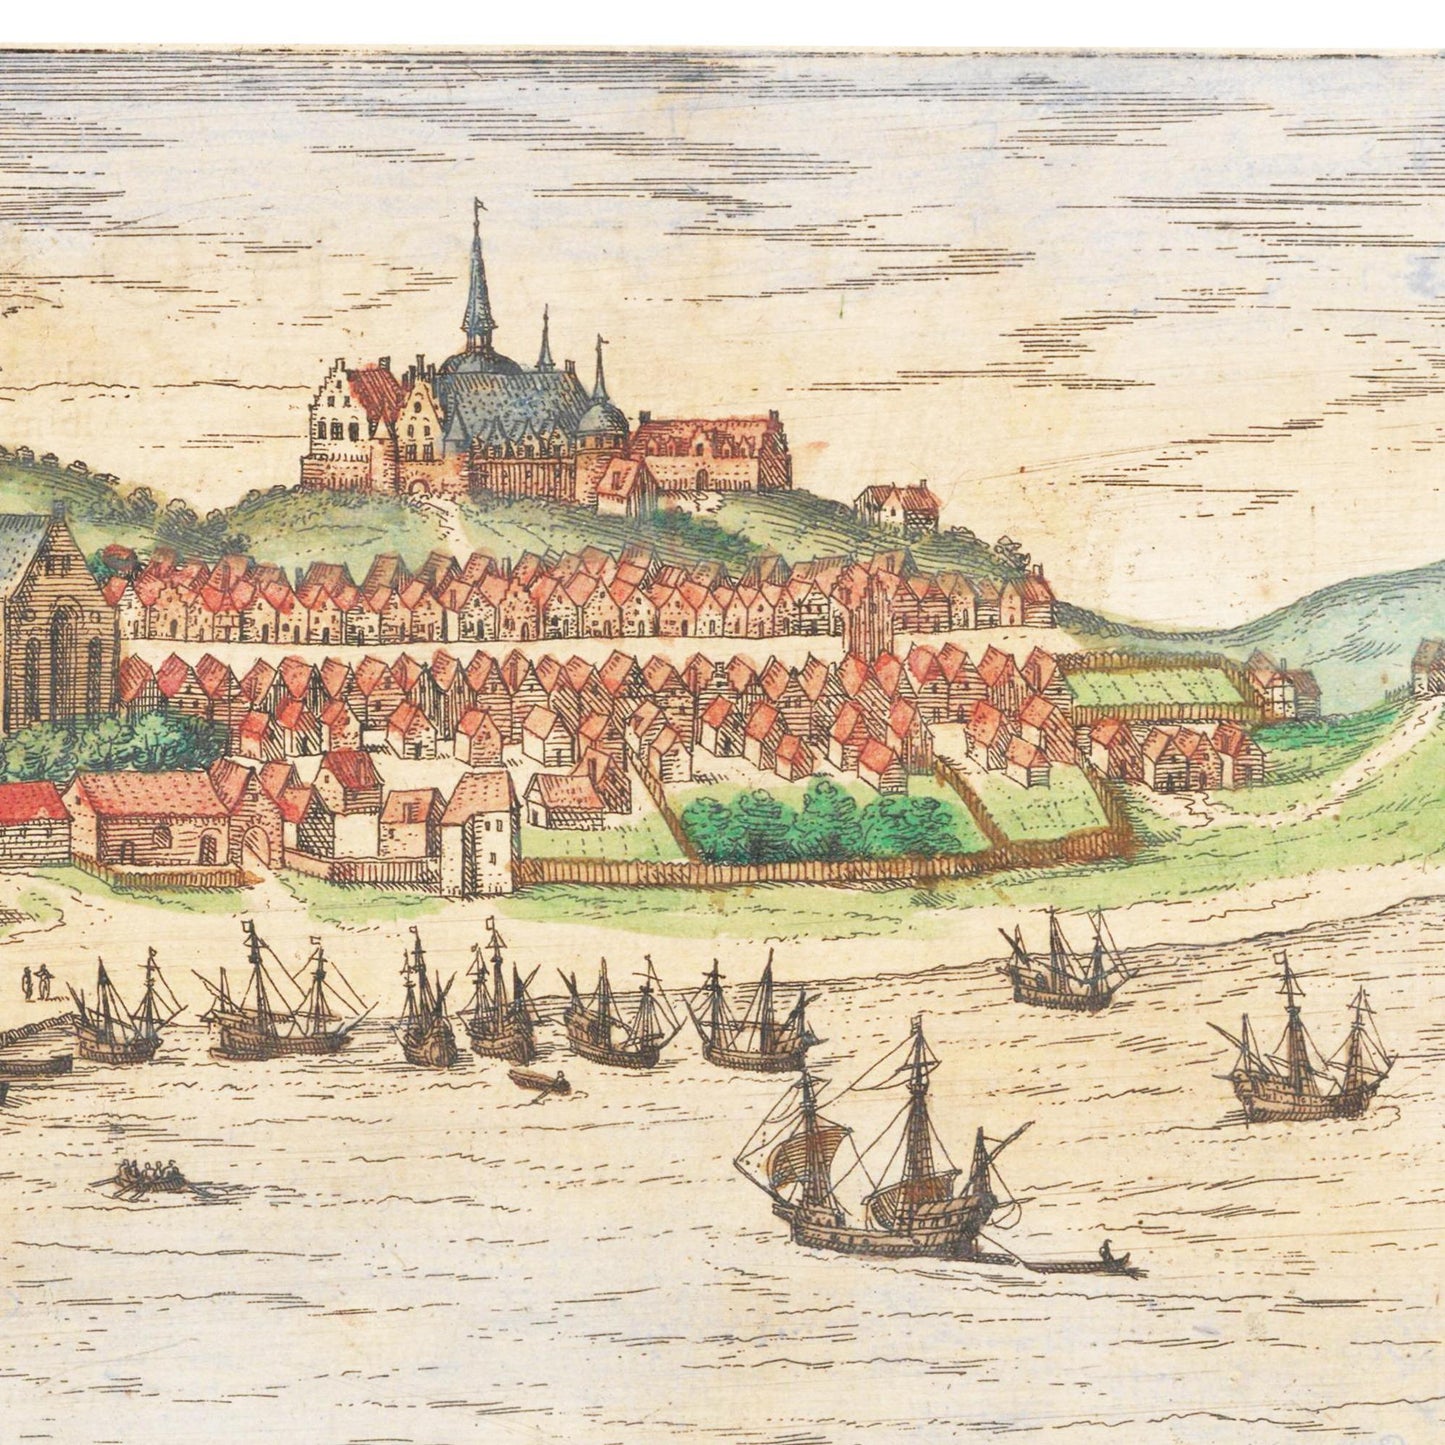 Historische Stadtansicht Flensburg um 1592